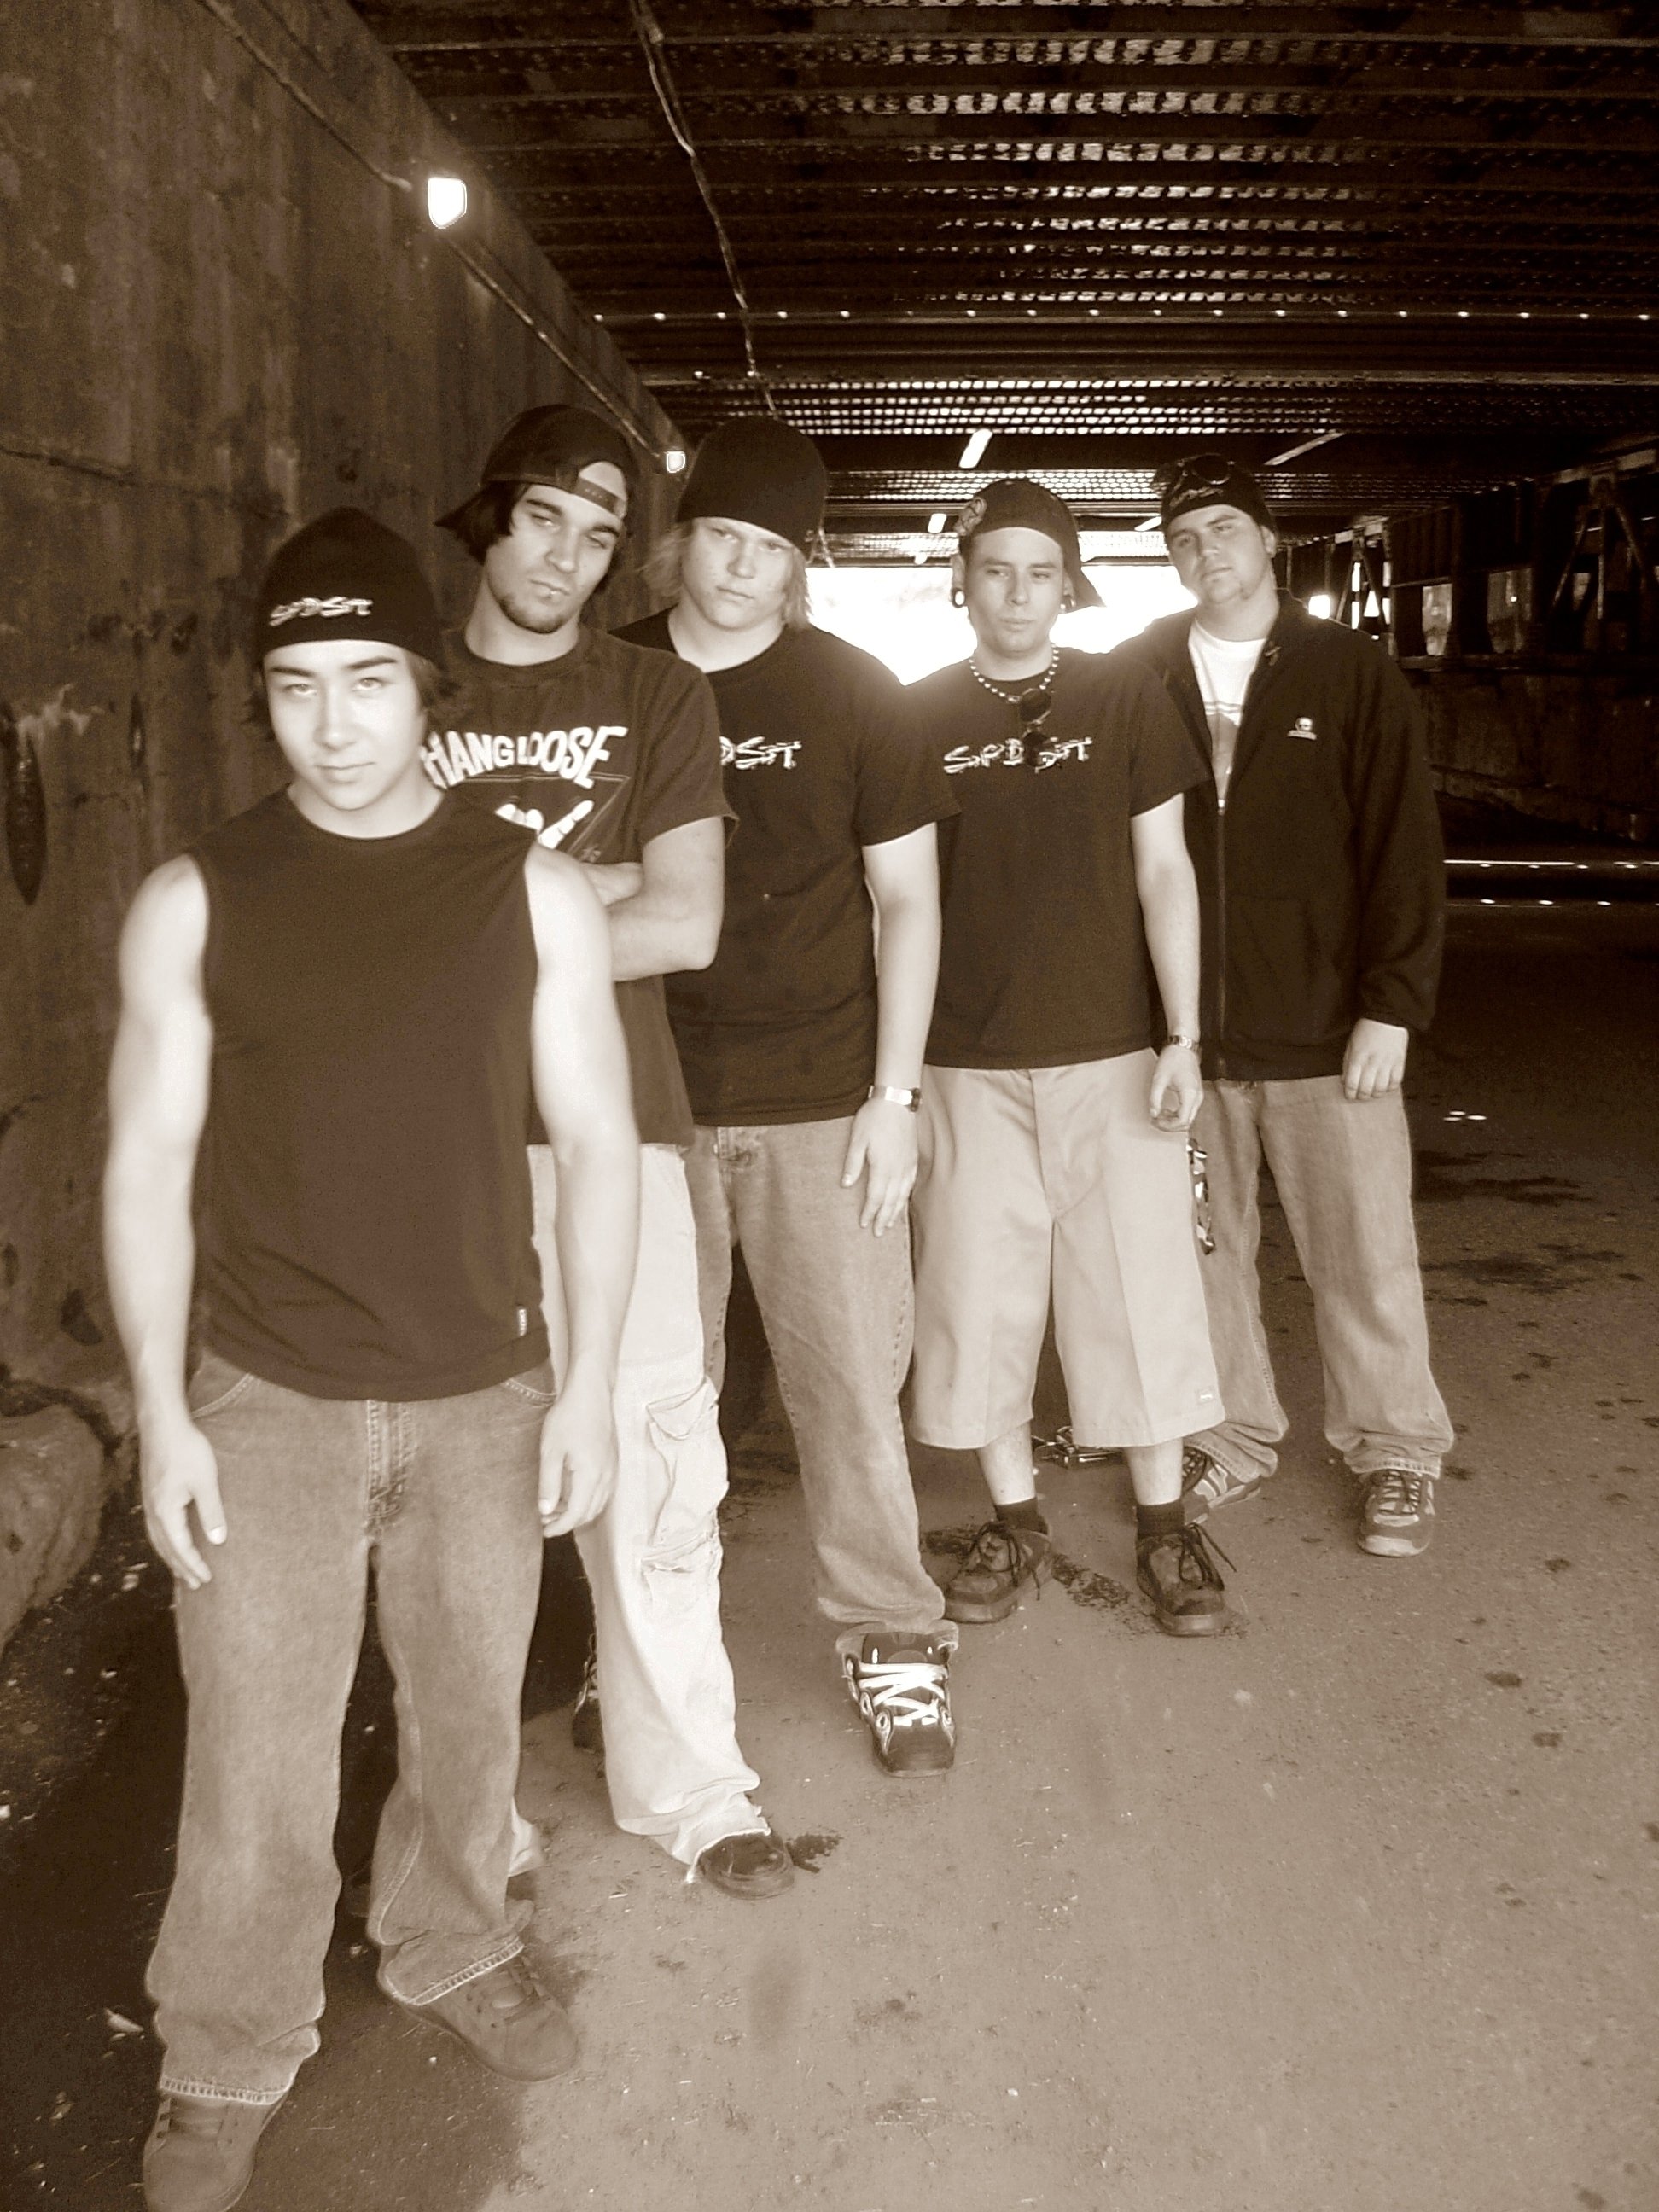 SPDST Crew - 2004